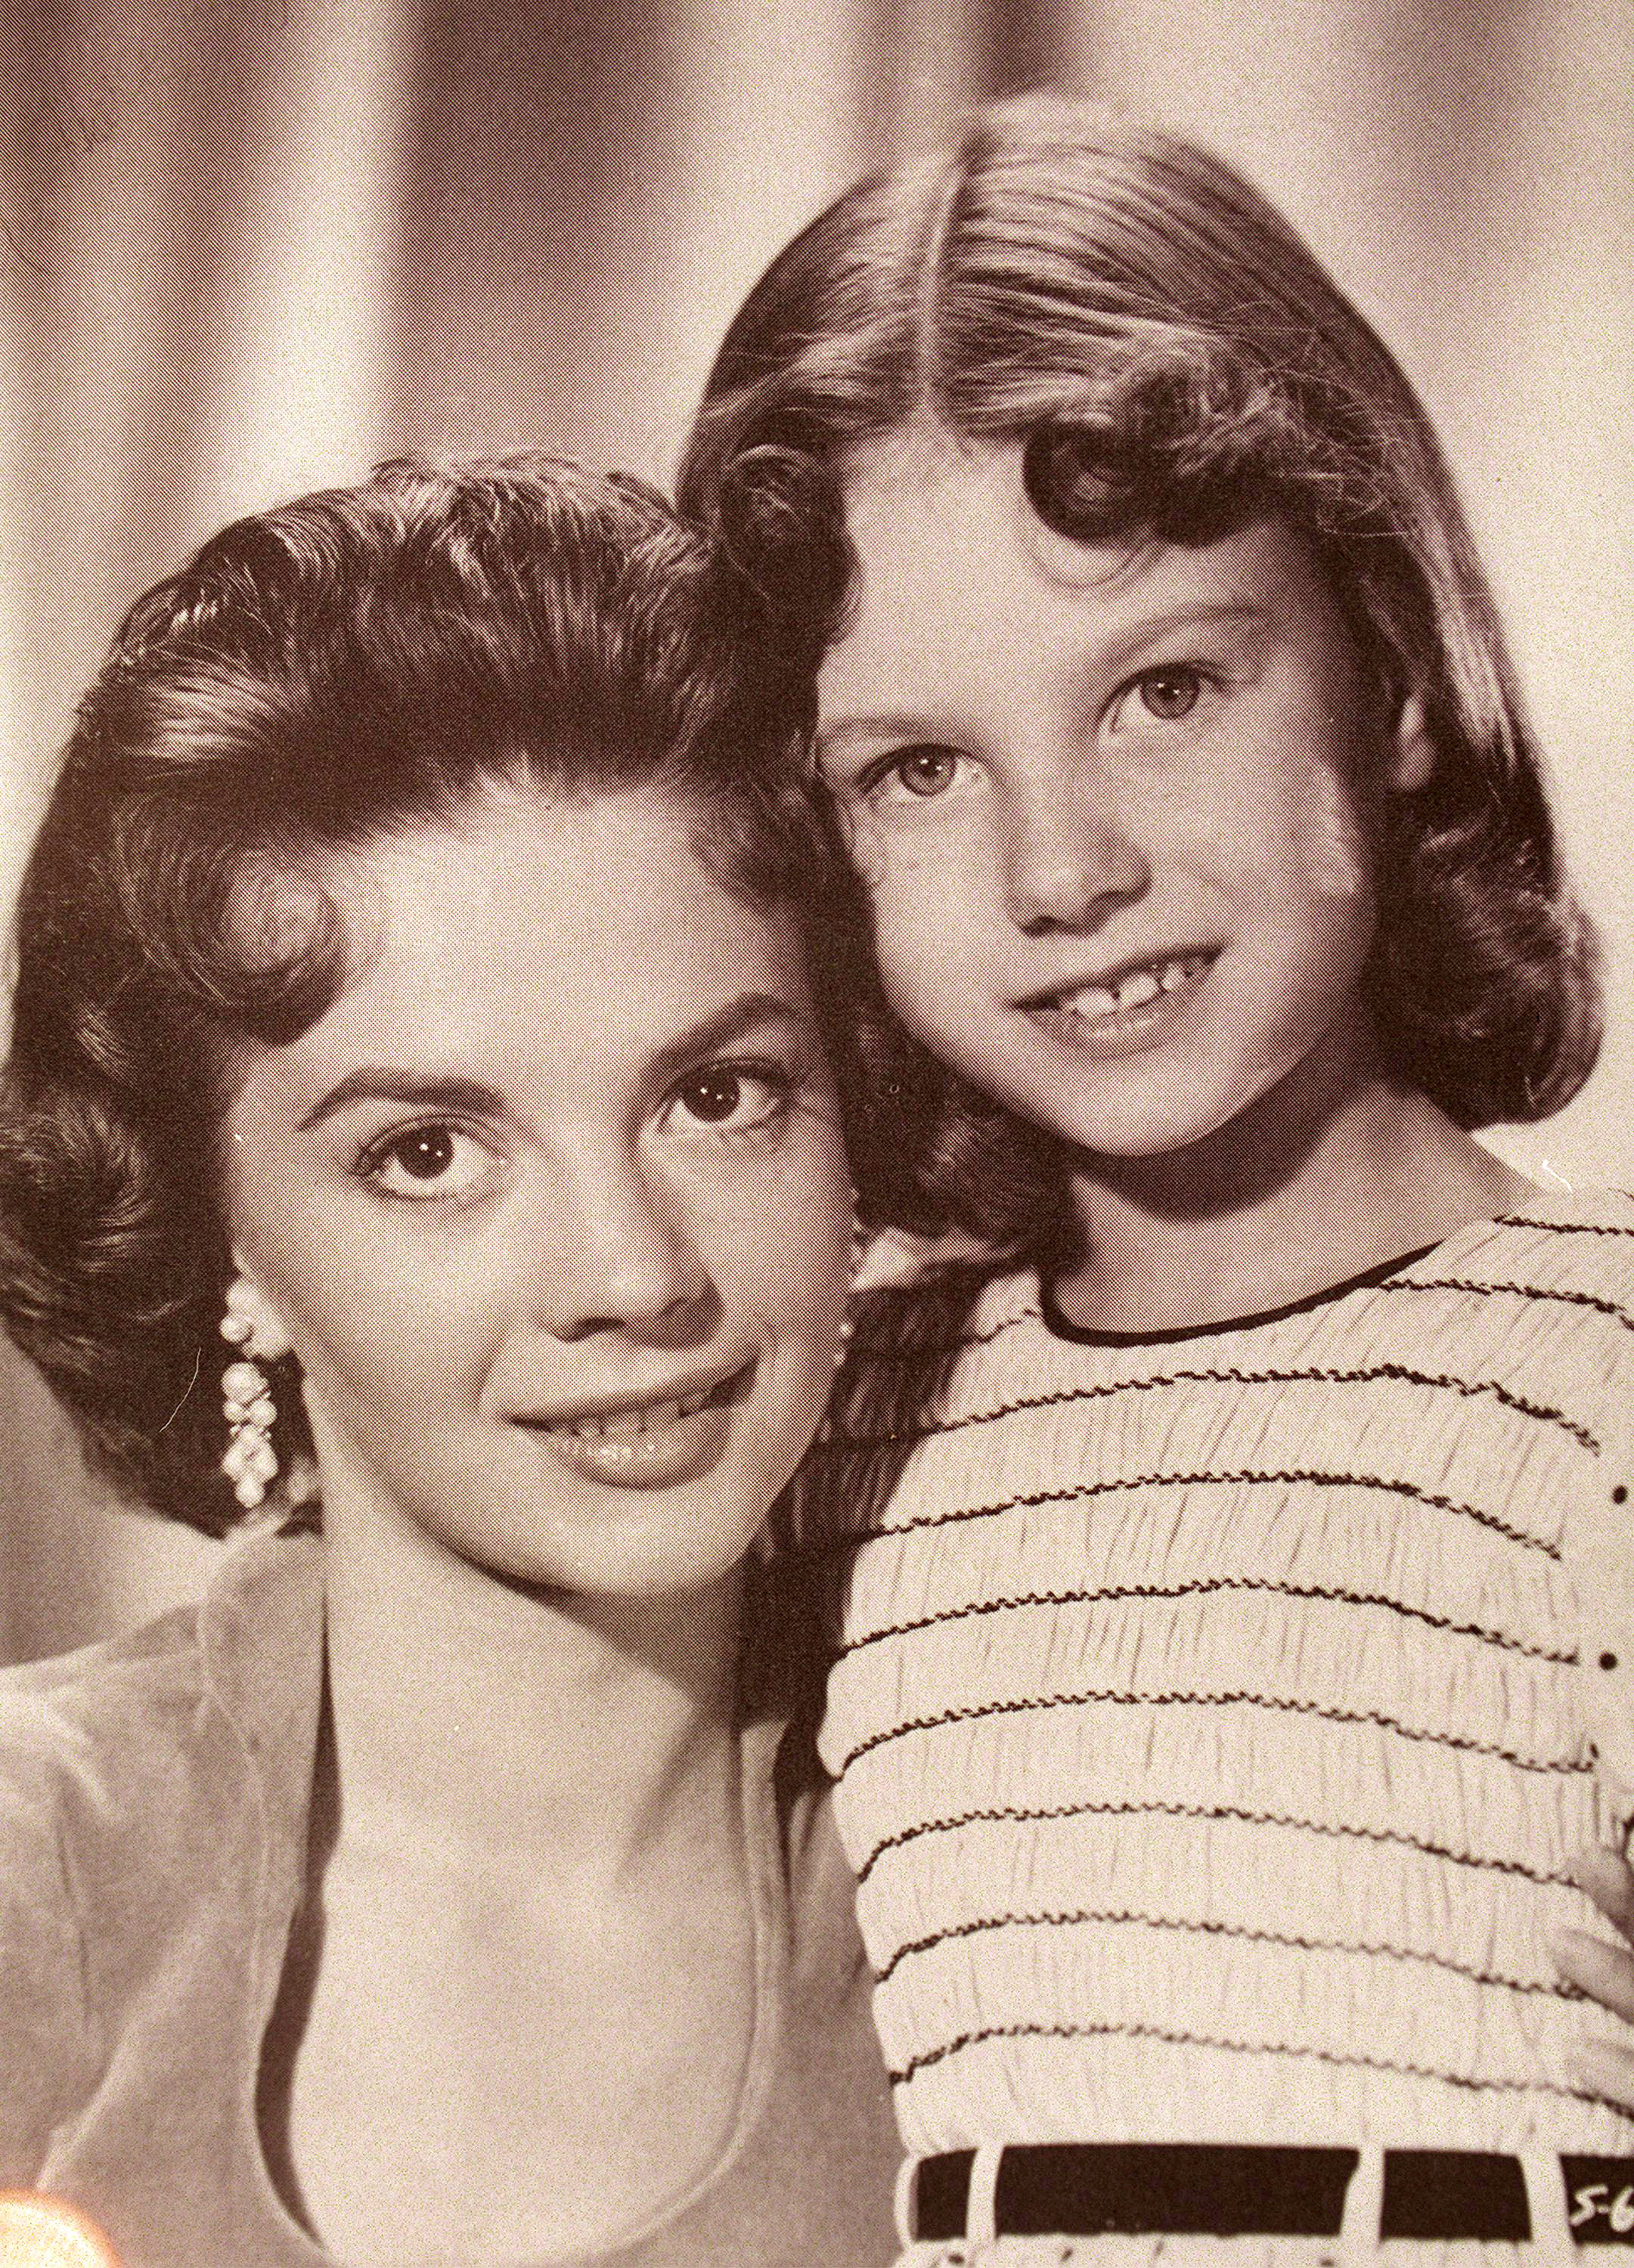 Lana Wood und Natalie Wood, als Lana Natalie als junges Mädchen in dem Film "Searches" 1956 spielte. | Quelle: Getty Images